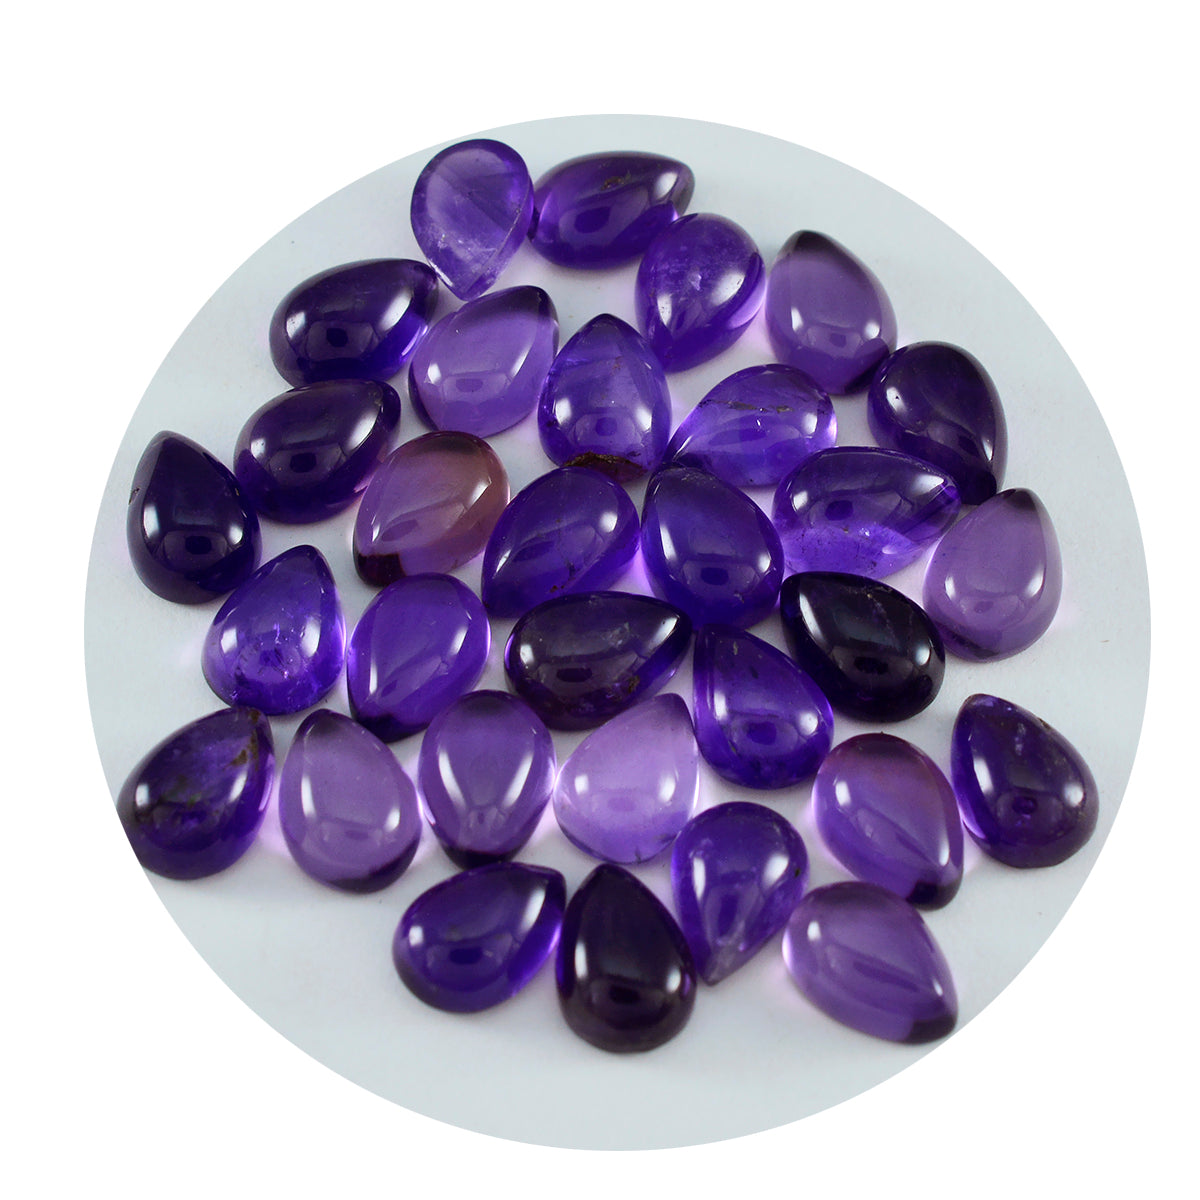 riyogems 1 шт., фиолетовый аметист, кабошон 5x7 мм, грушевидная форма, прекрасное качество, свободные драгоценные камни